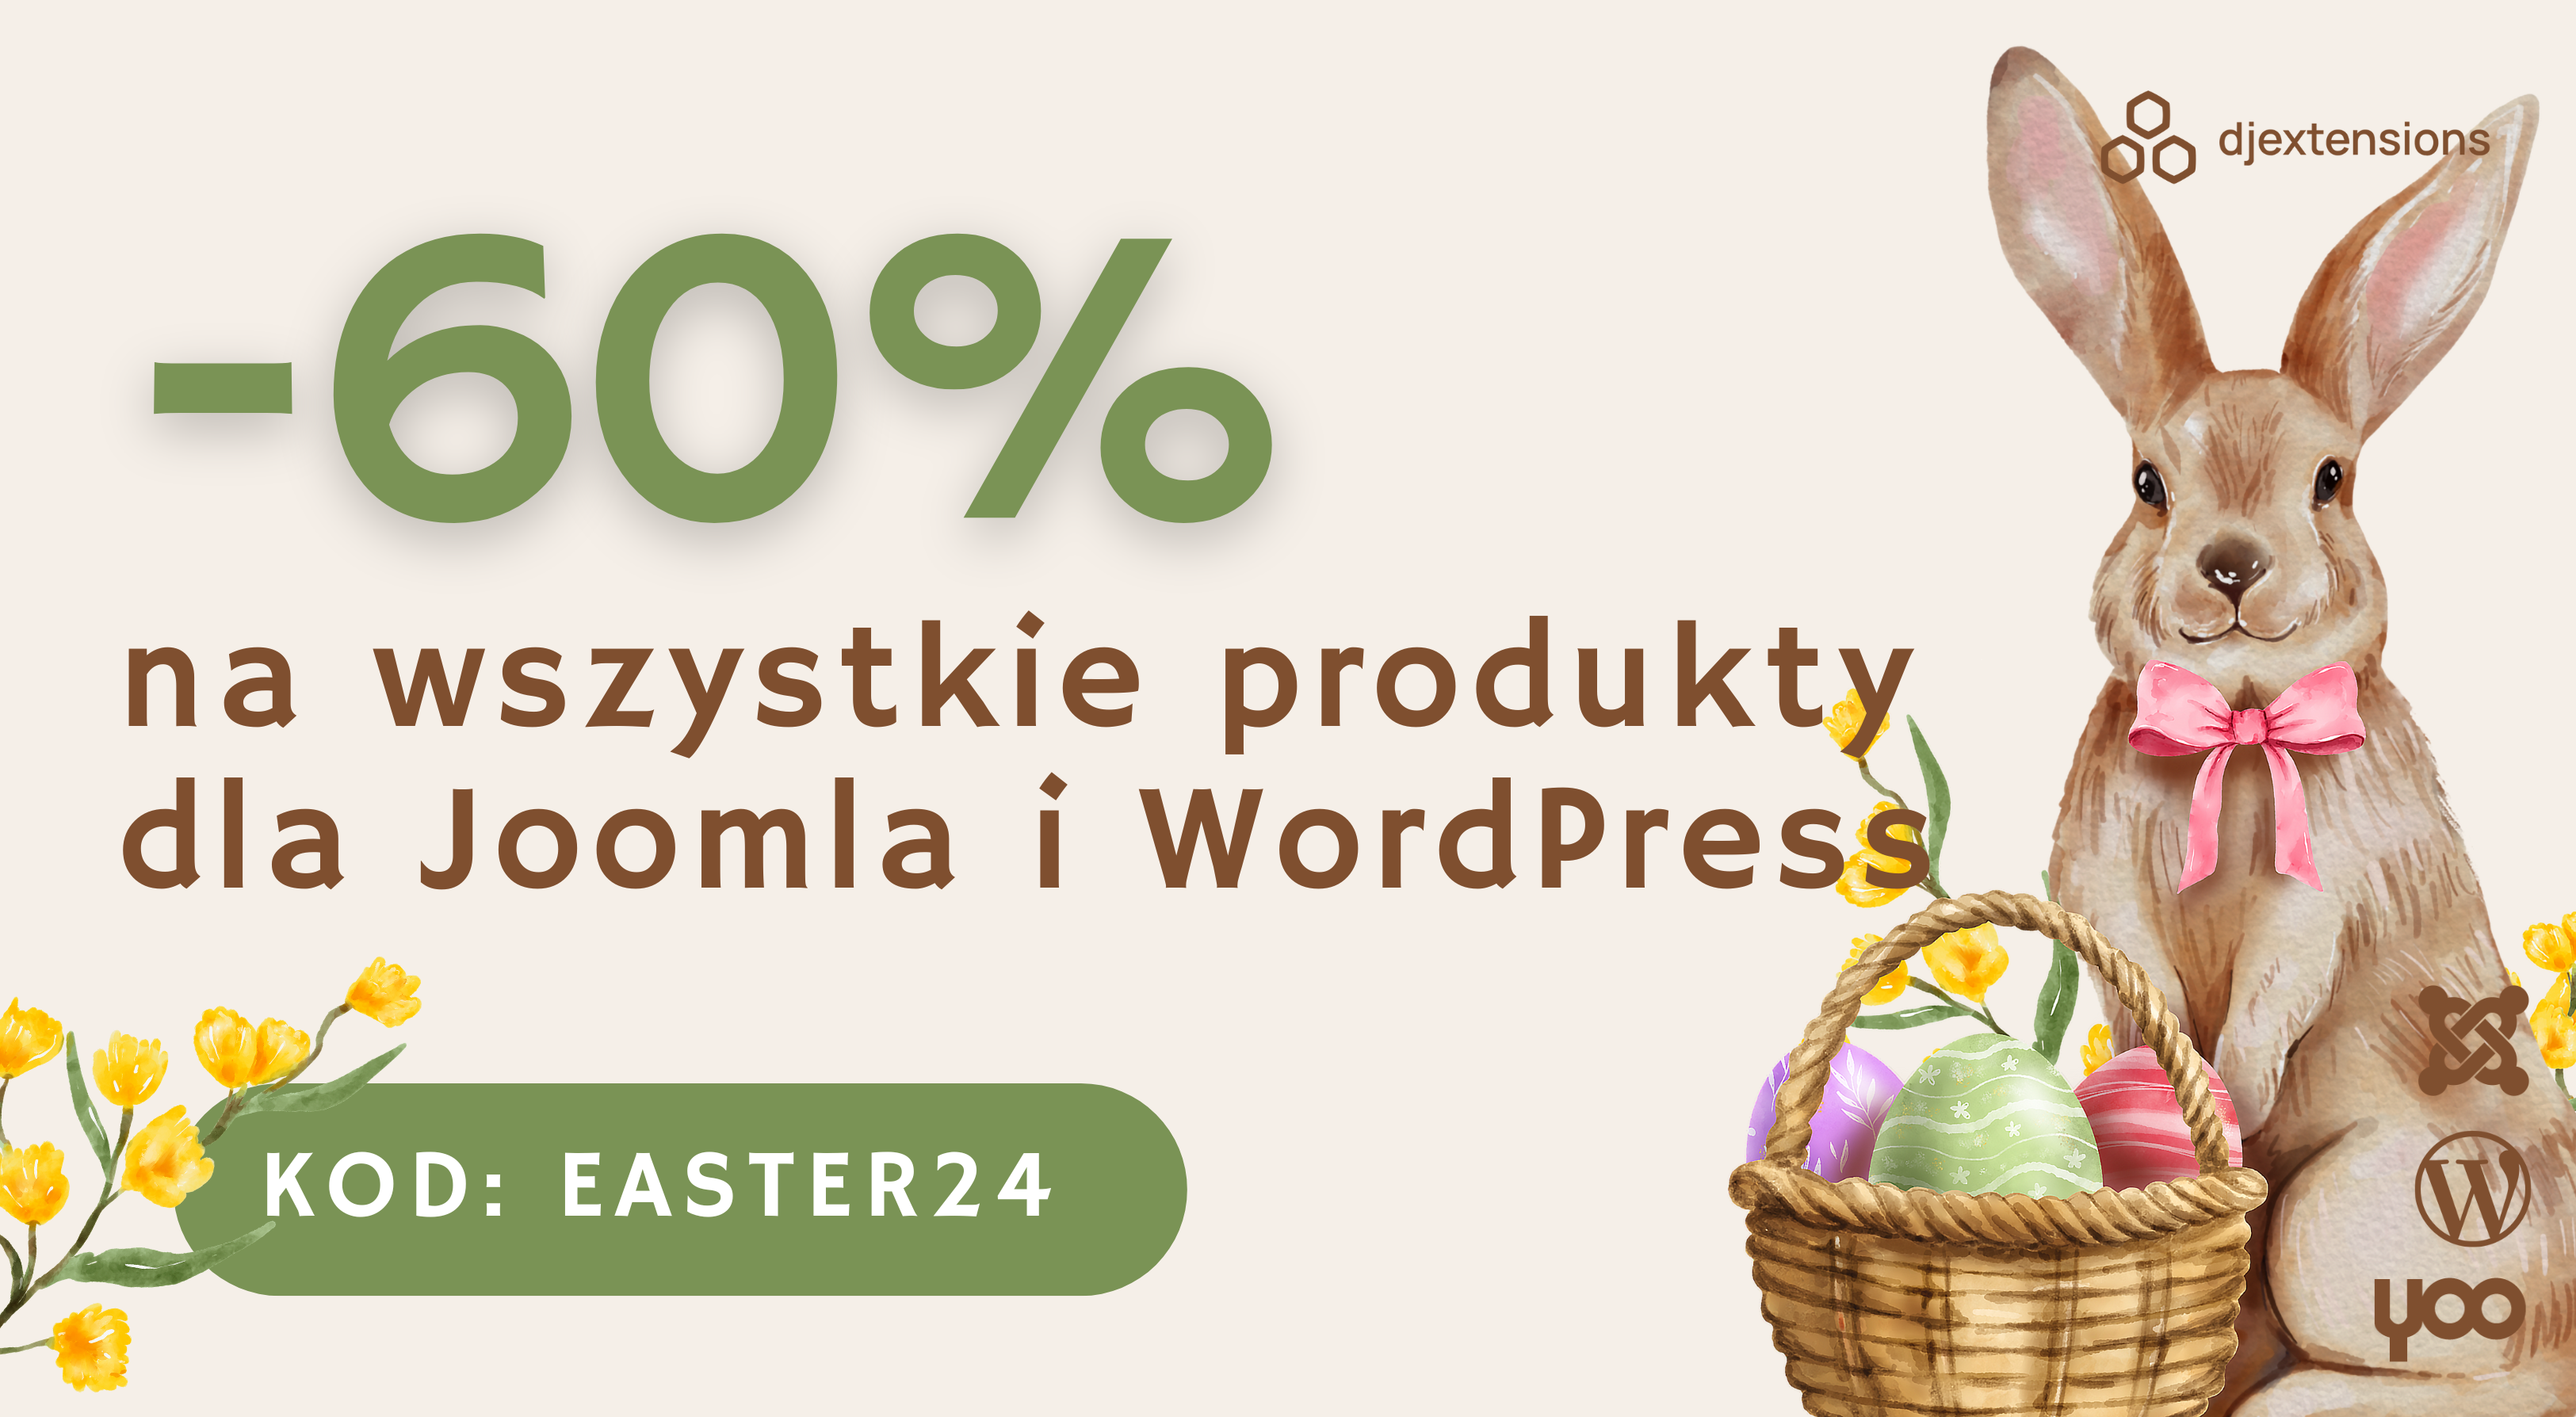 Wiosna pełna oszczędności! Skorzystaj z 60% rabatu Wielkanocnego na WSZYSTKIE produkty Joomla i WordPress